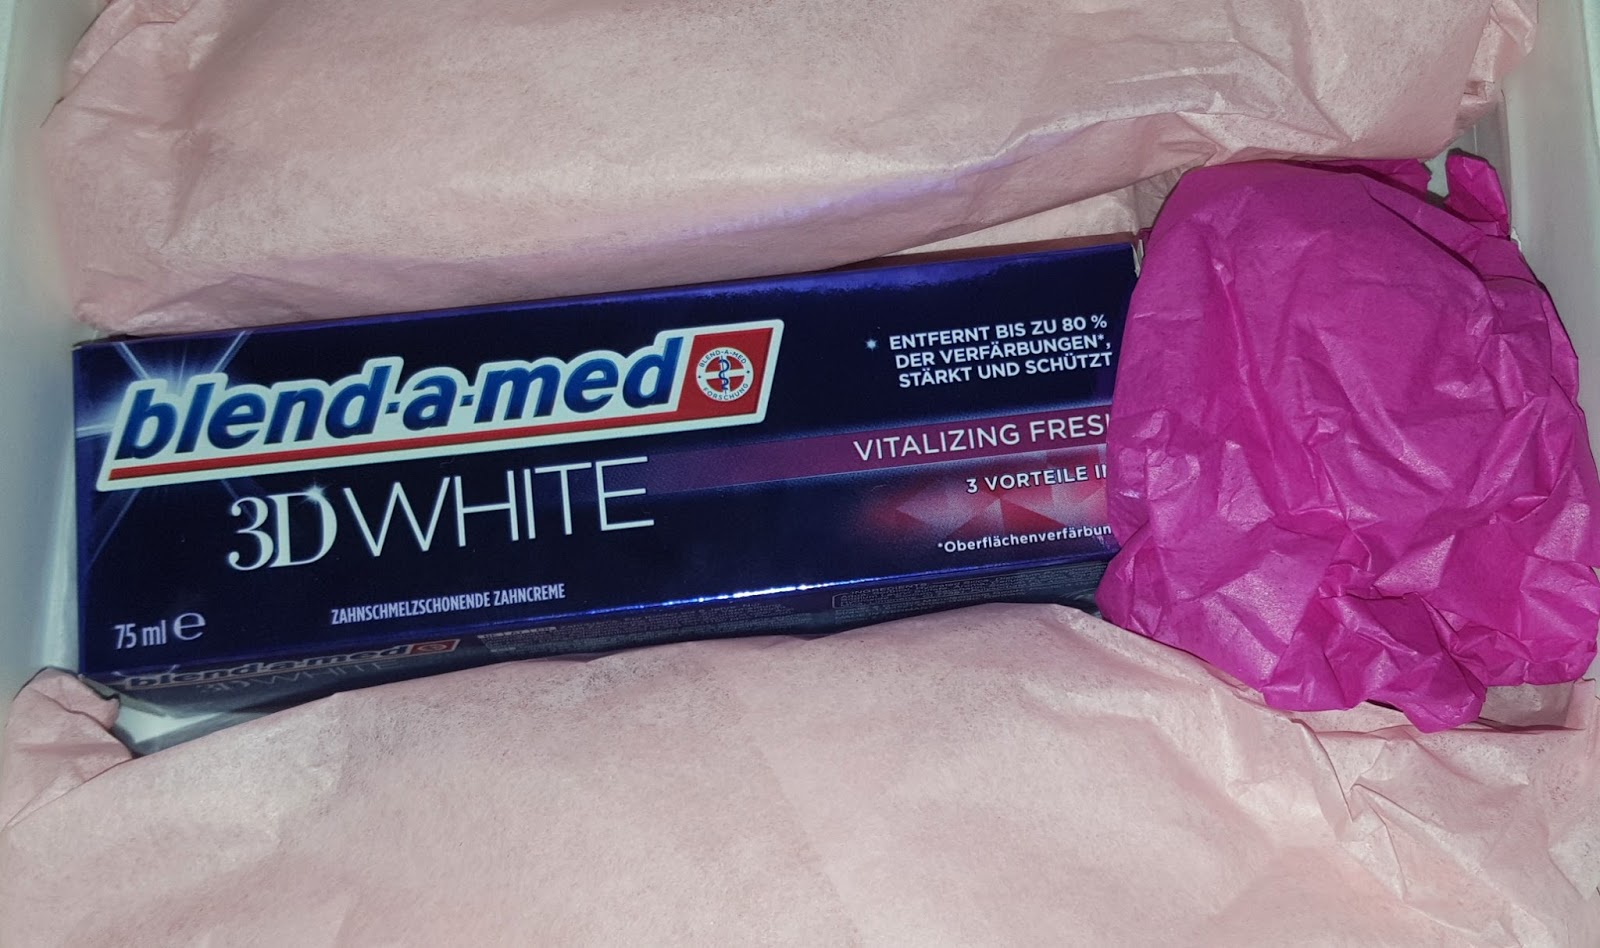 Muttis Produkttest Blog Blend A Med 3d White Vitalizing Fresh Zahncreme